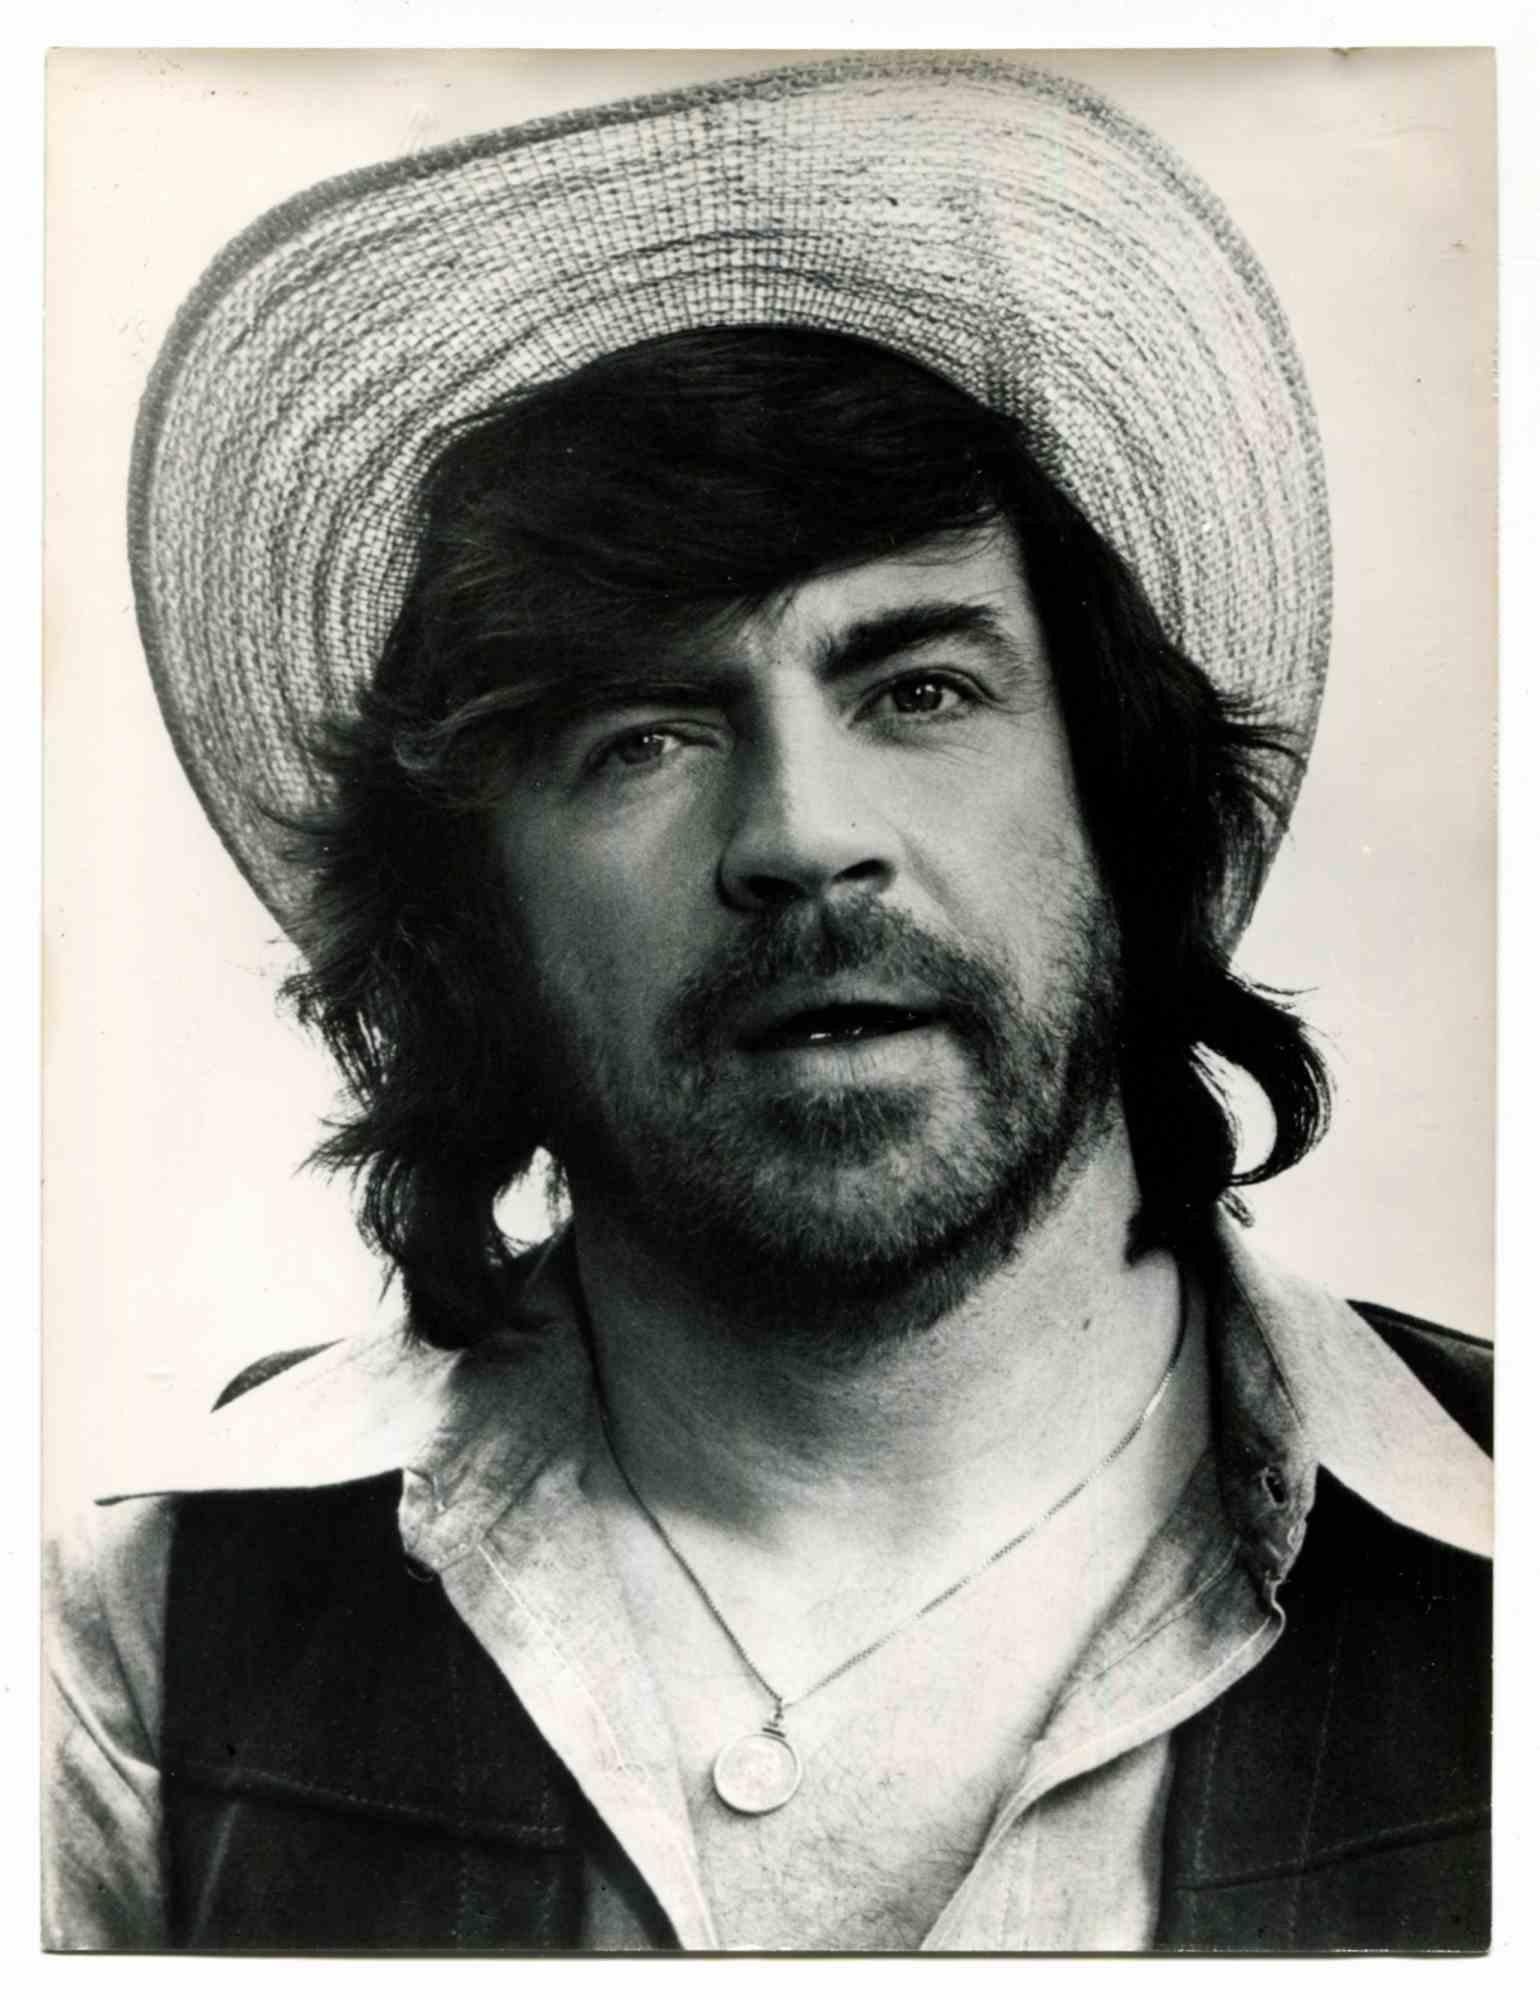 Unknown Portrait Photograph - Alan Bates - Vintage Photo - 1970s